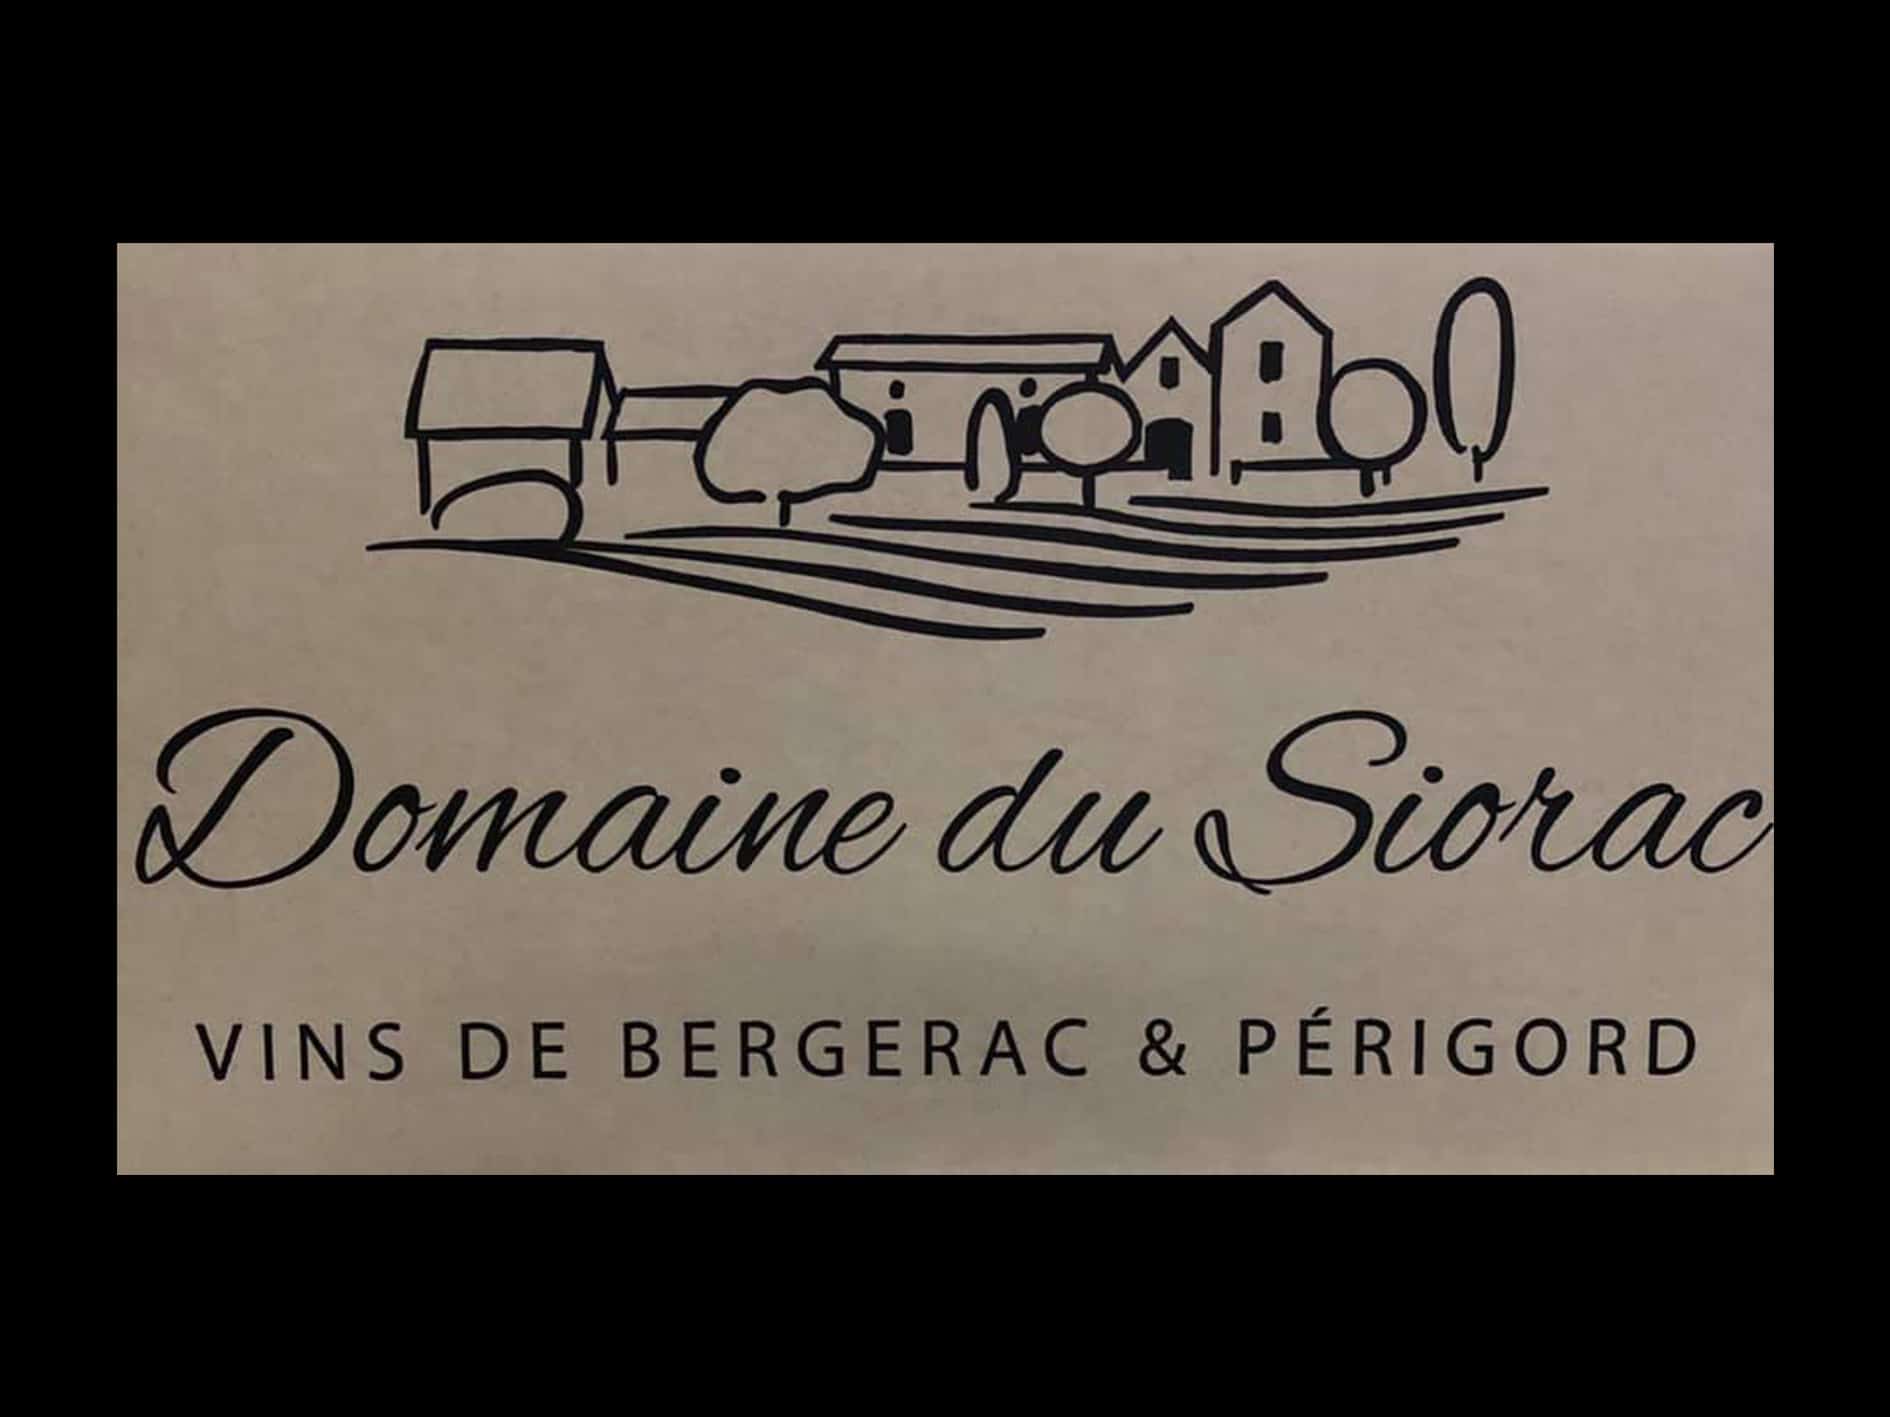 Best of Bergerac Domaine du Siorac